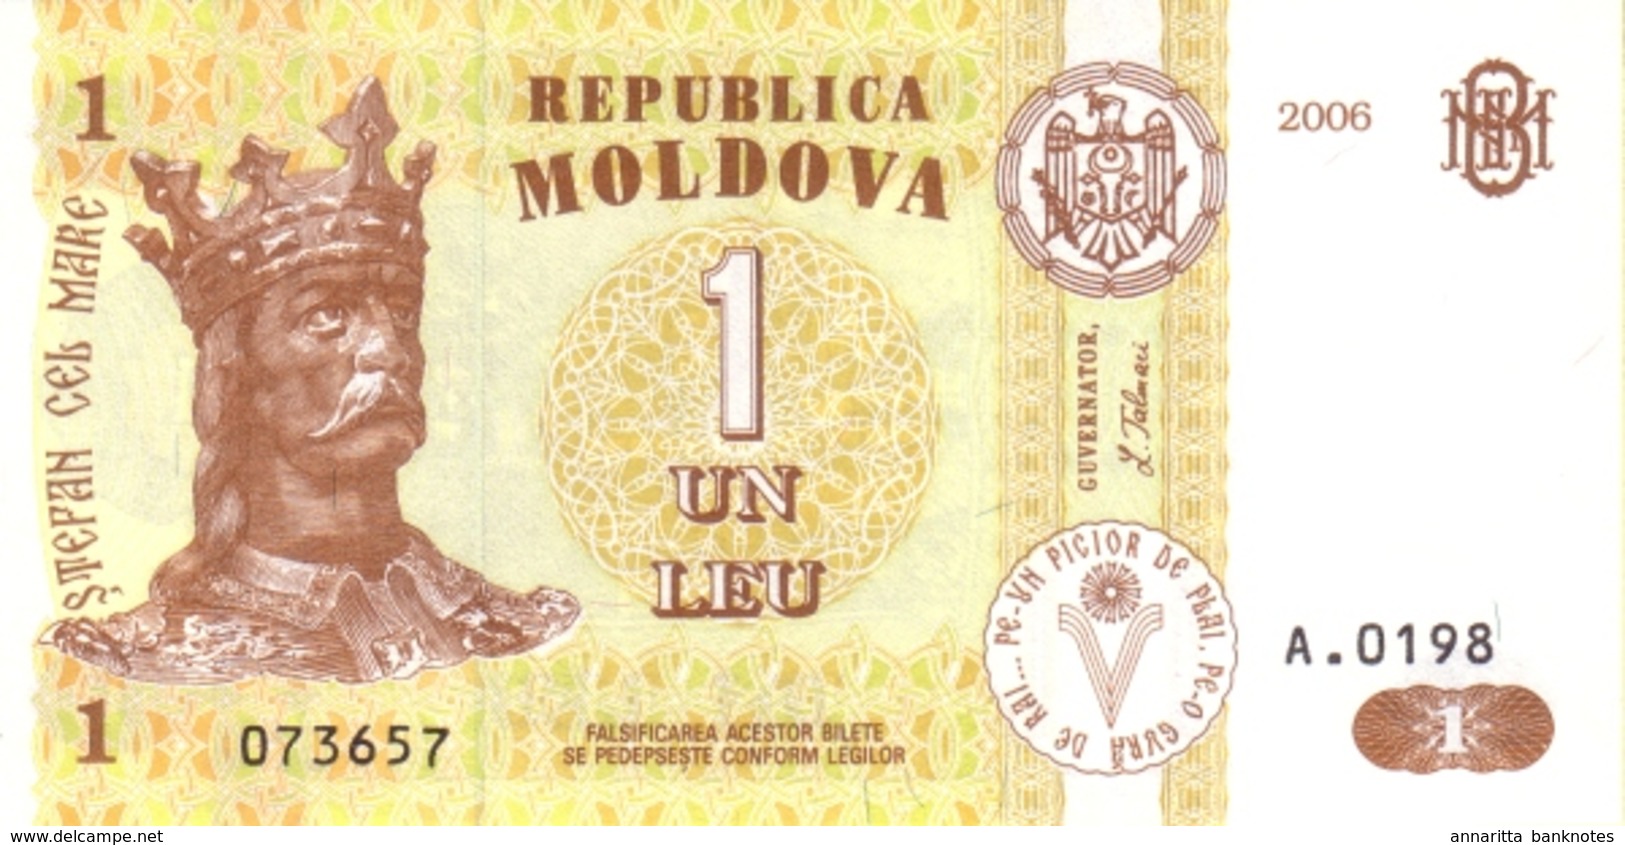 MOLDOVA 1 LEU 2006 P-8g NEUF [MD108g] - Moldawien (Moldau)